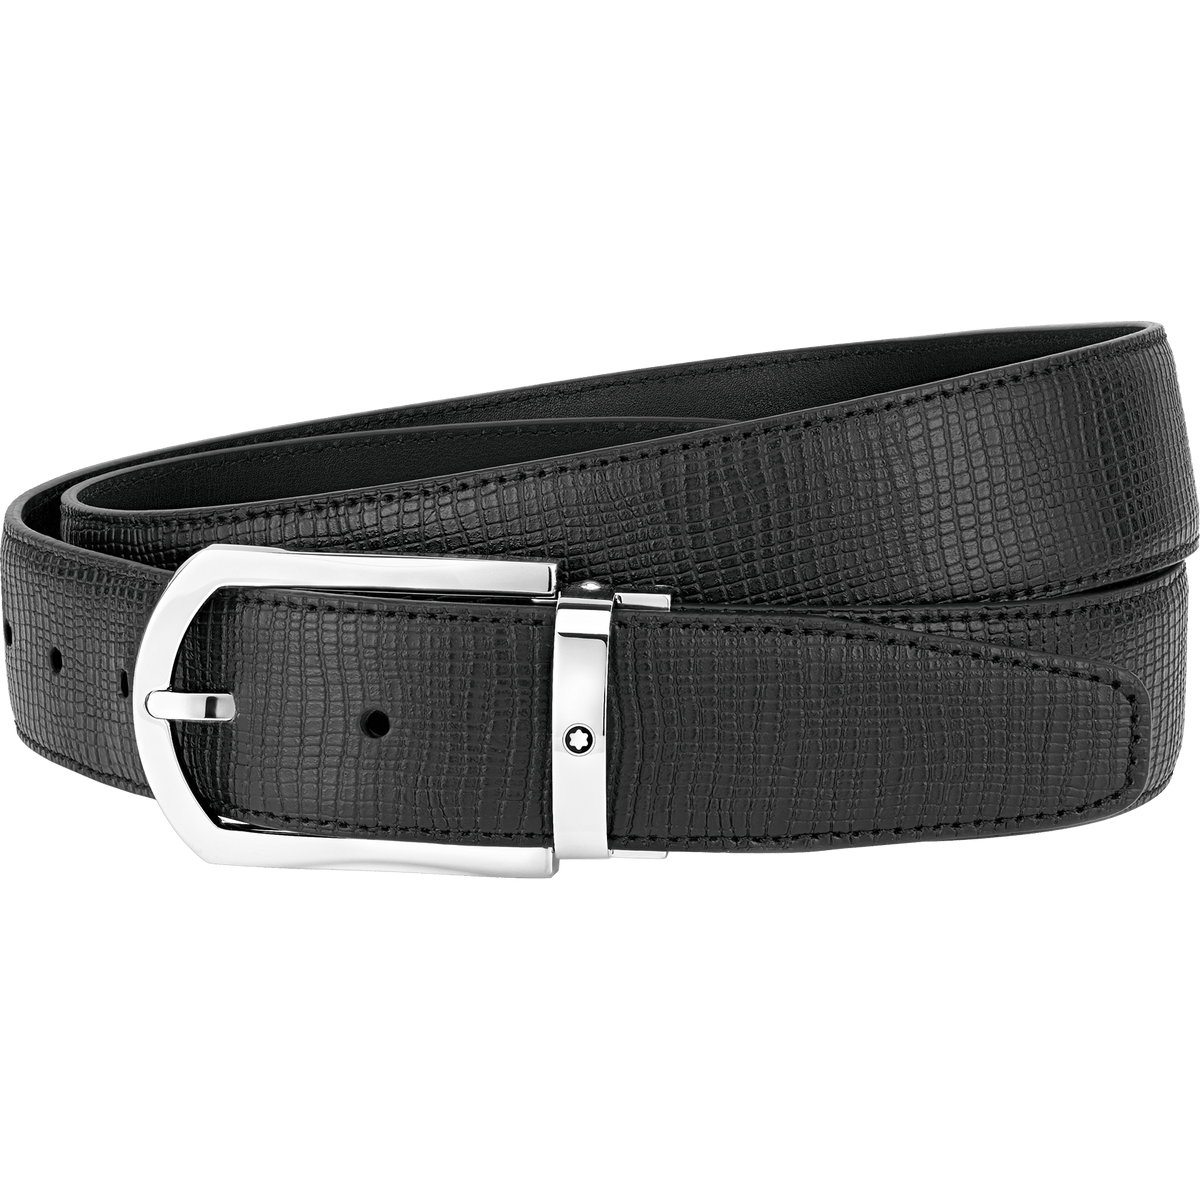 Horseshoe buckle black  35 mm leather belt